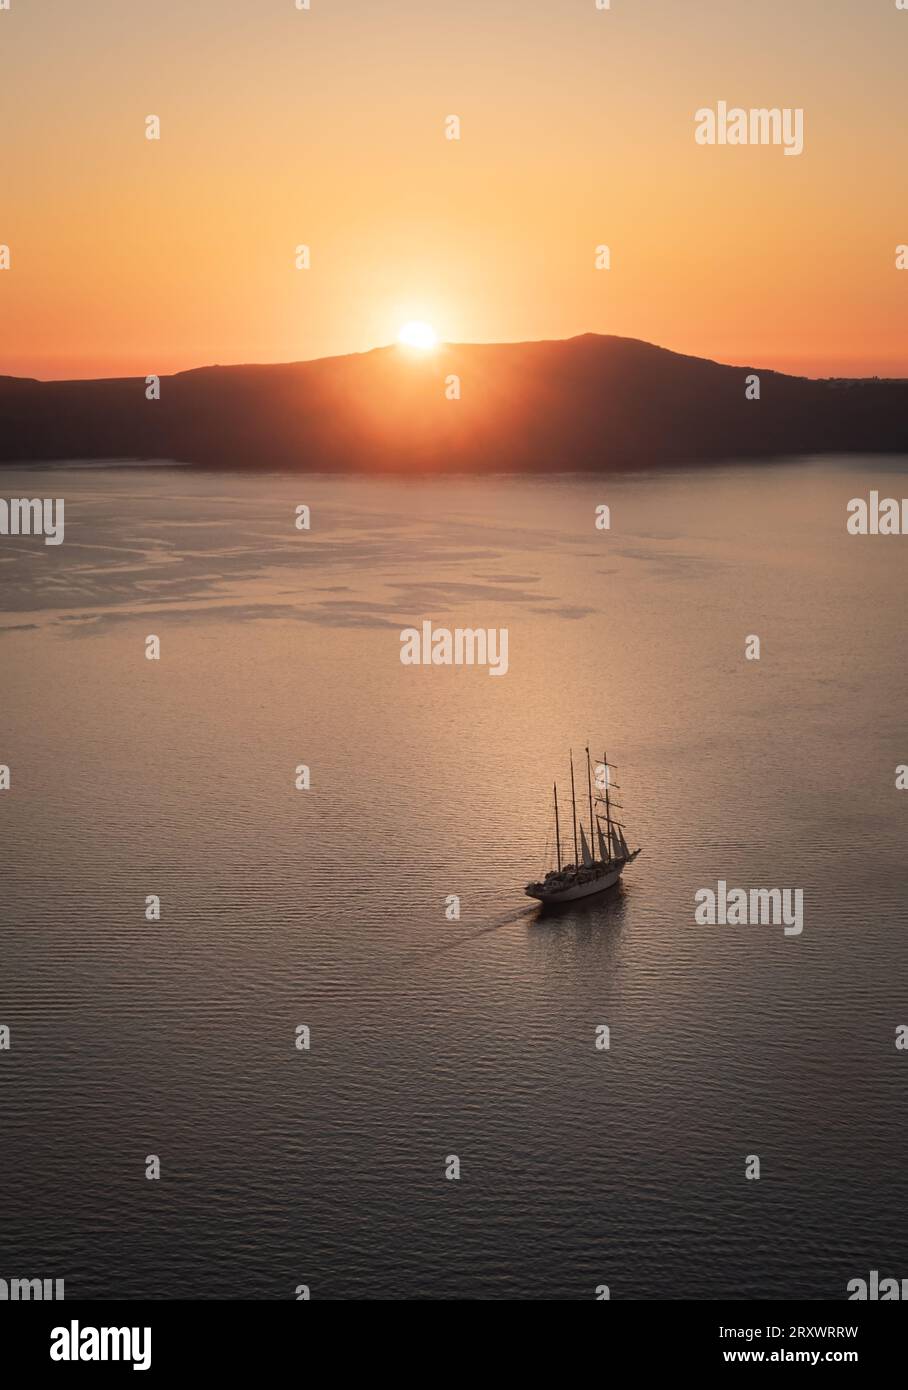 La baia al largo di Thera, Santorini, con il sole che tramonta dietro l'isola di Thirasia, il cielo limpido e dorato e la barca a vela alberata nel mezzo della baia Foto Stock